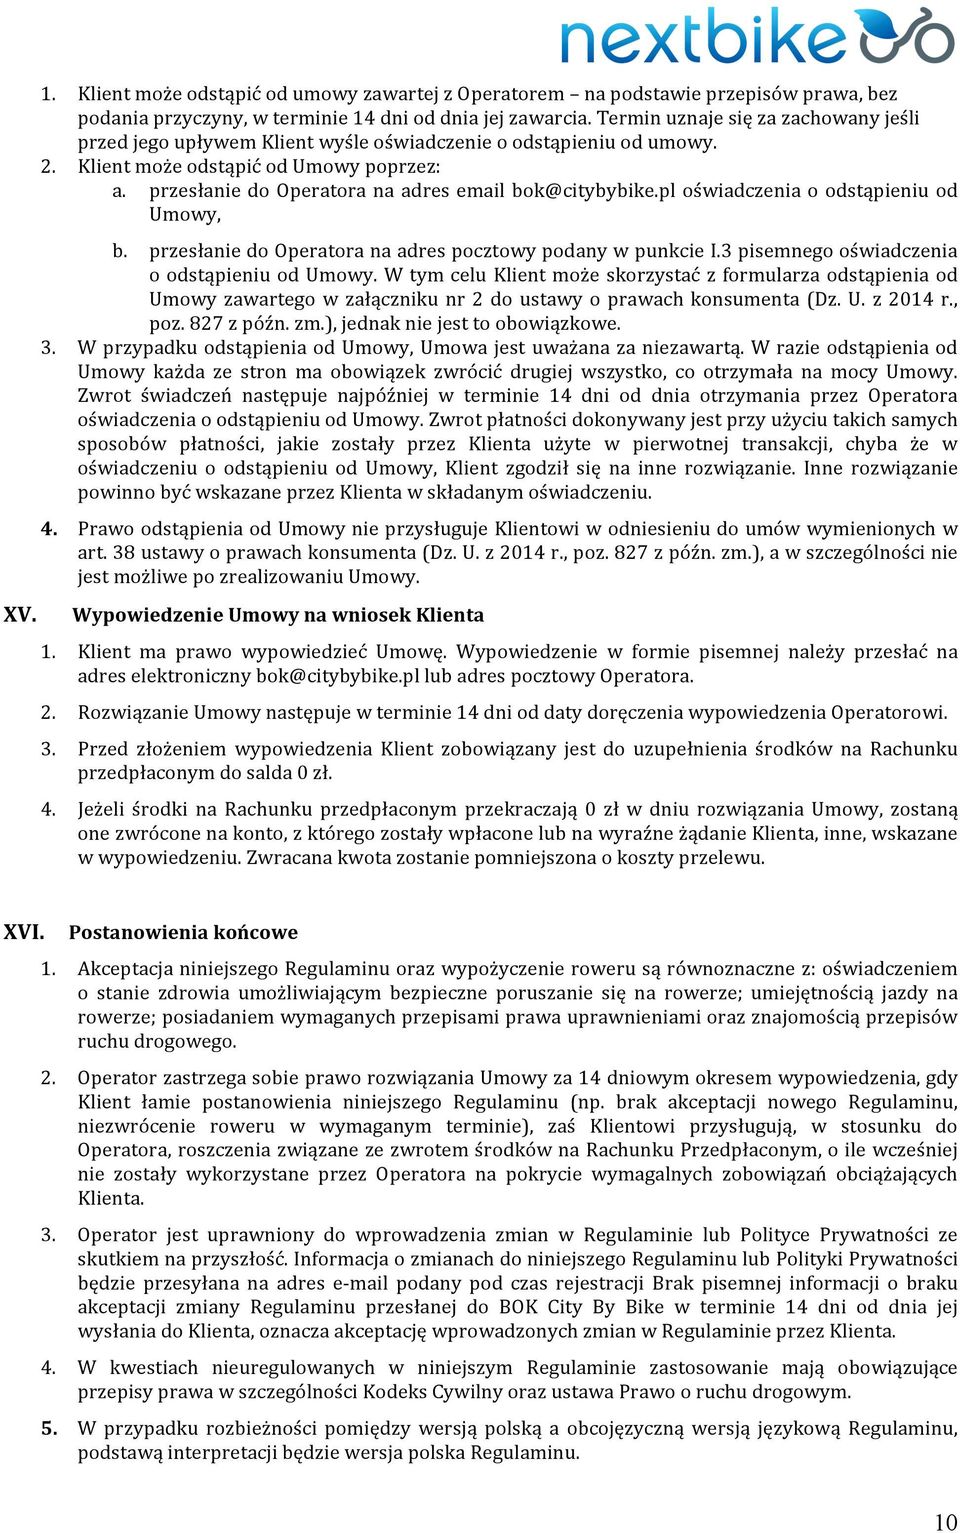 przesłanie do Operatora na adres email bok@citybybike.pl oświadczenia o odstąpieniu od Umowy, b. przesłanie do Operatora na adres pocztowy podany w punkcie I.